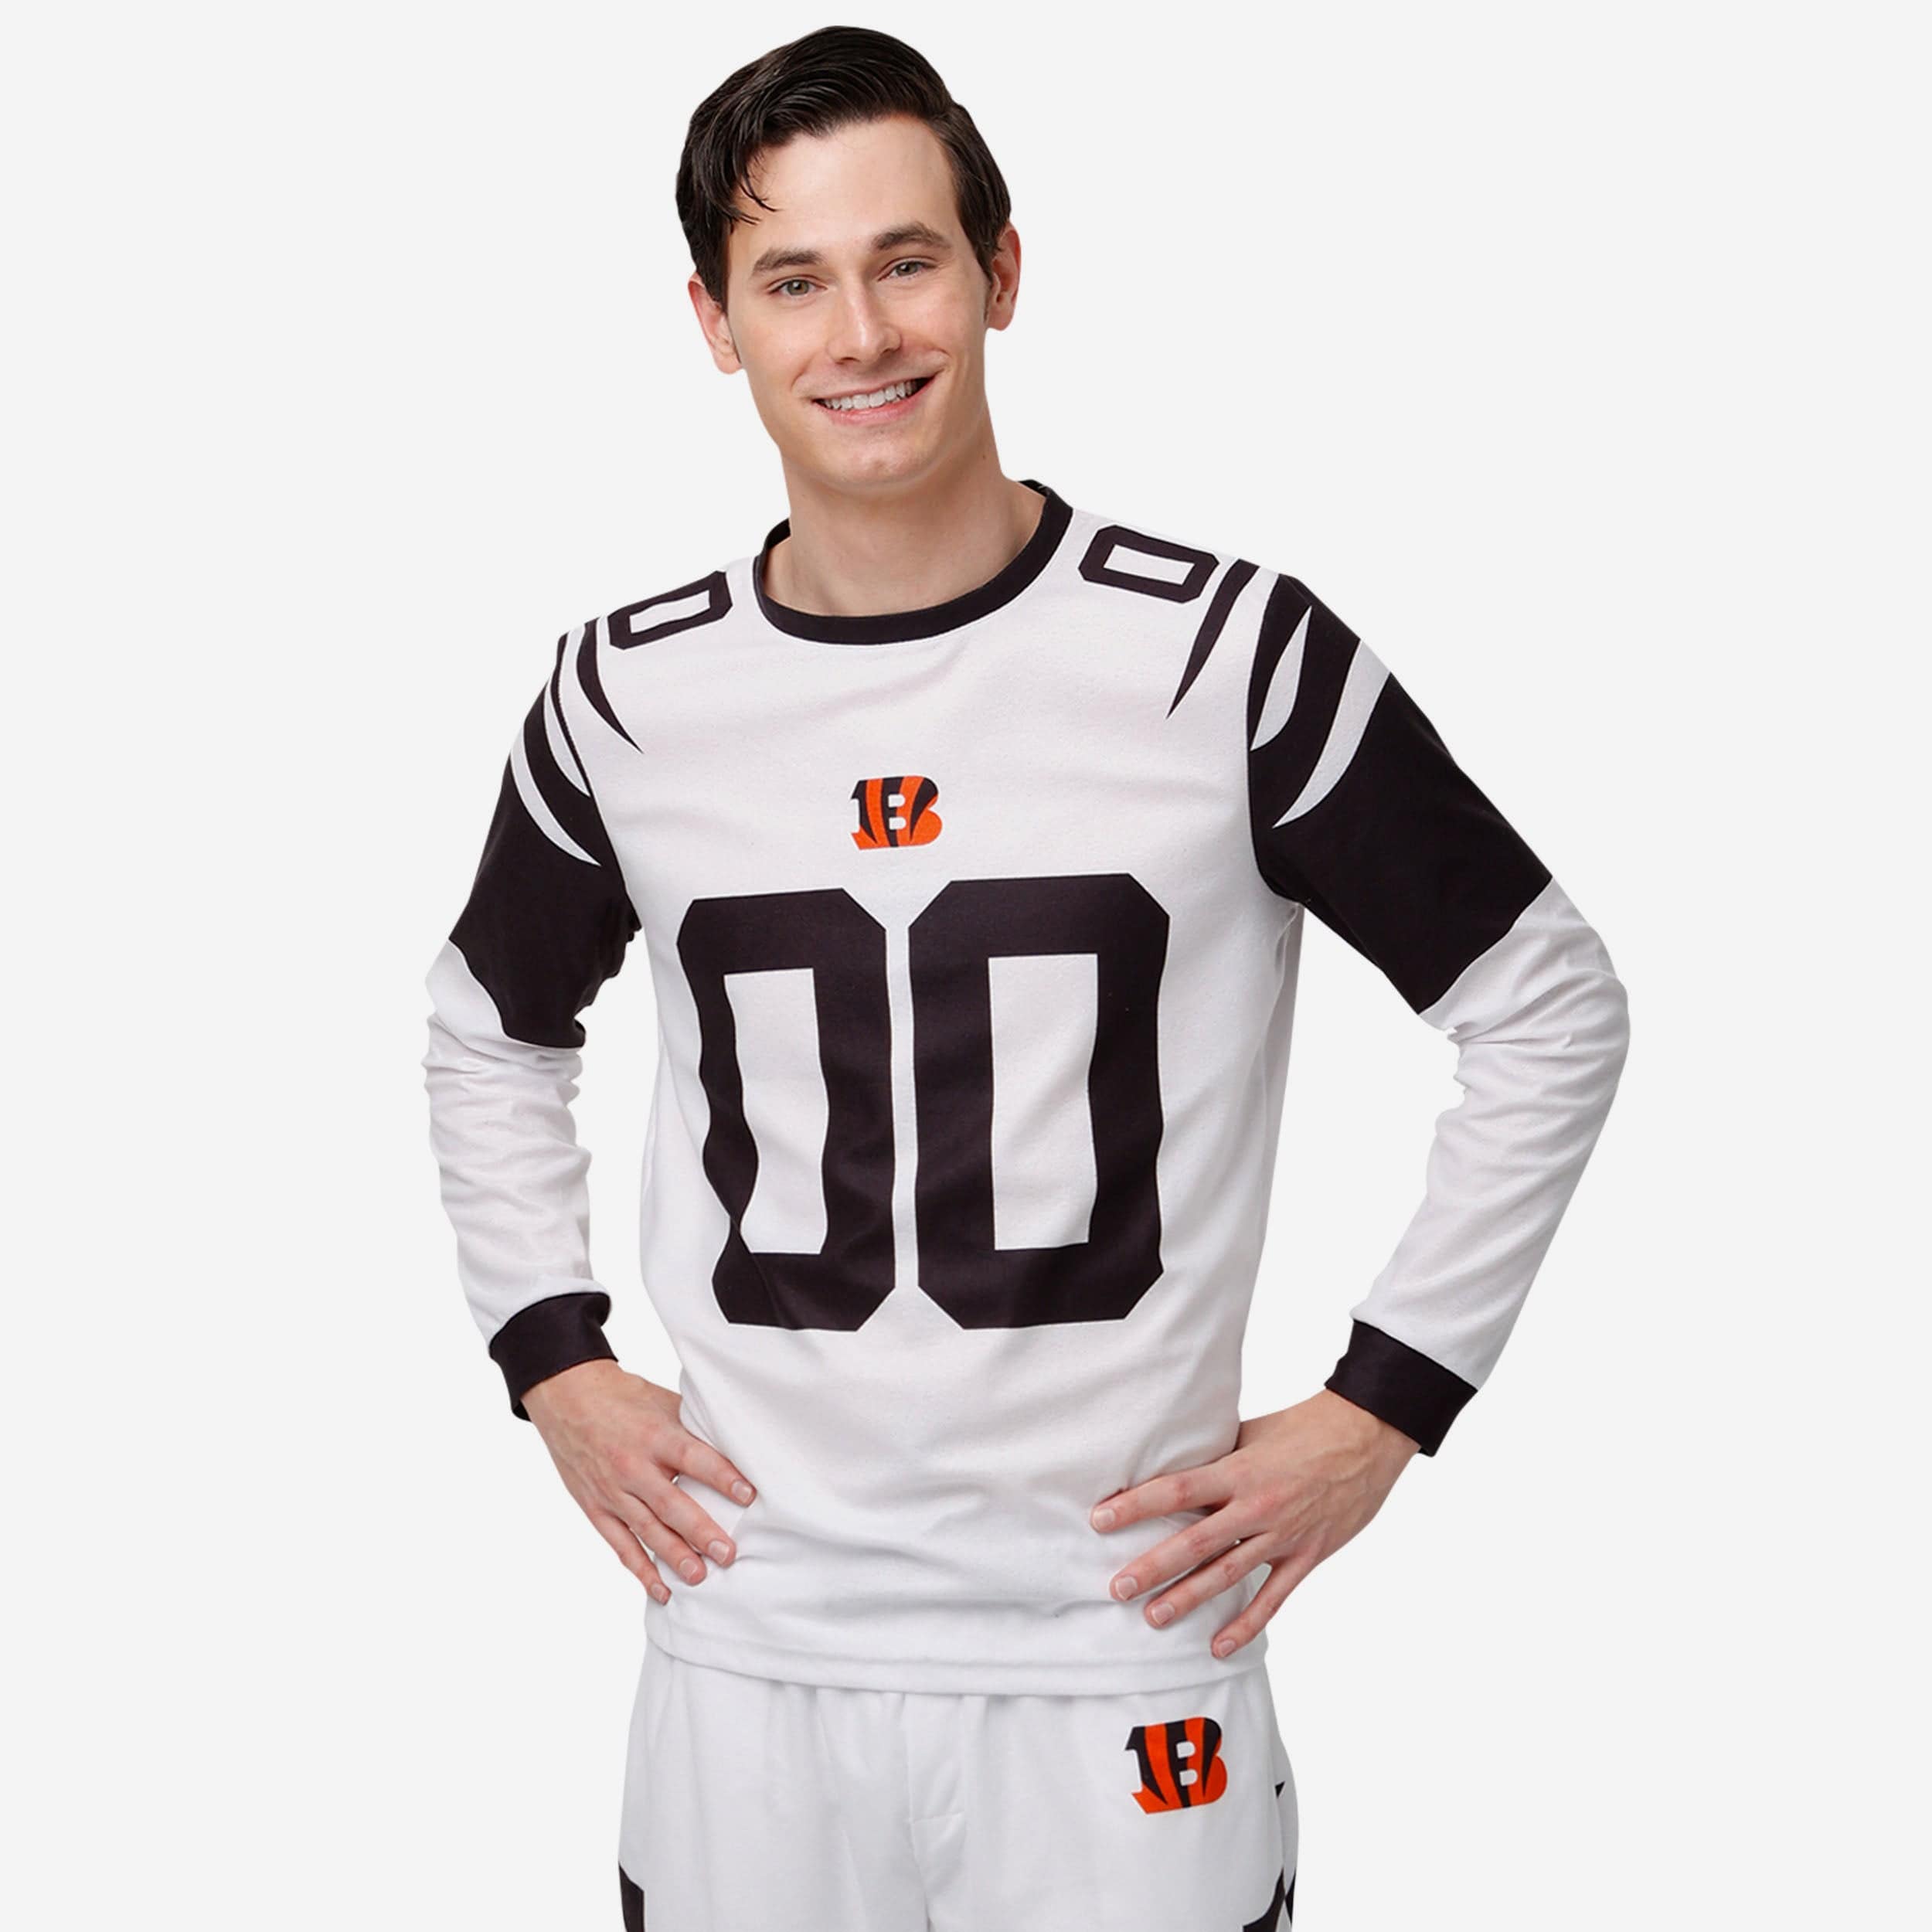 Cincinnati Bengals NFL Mens White Stripe Pajama Pants